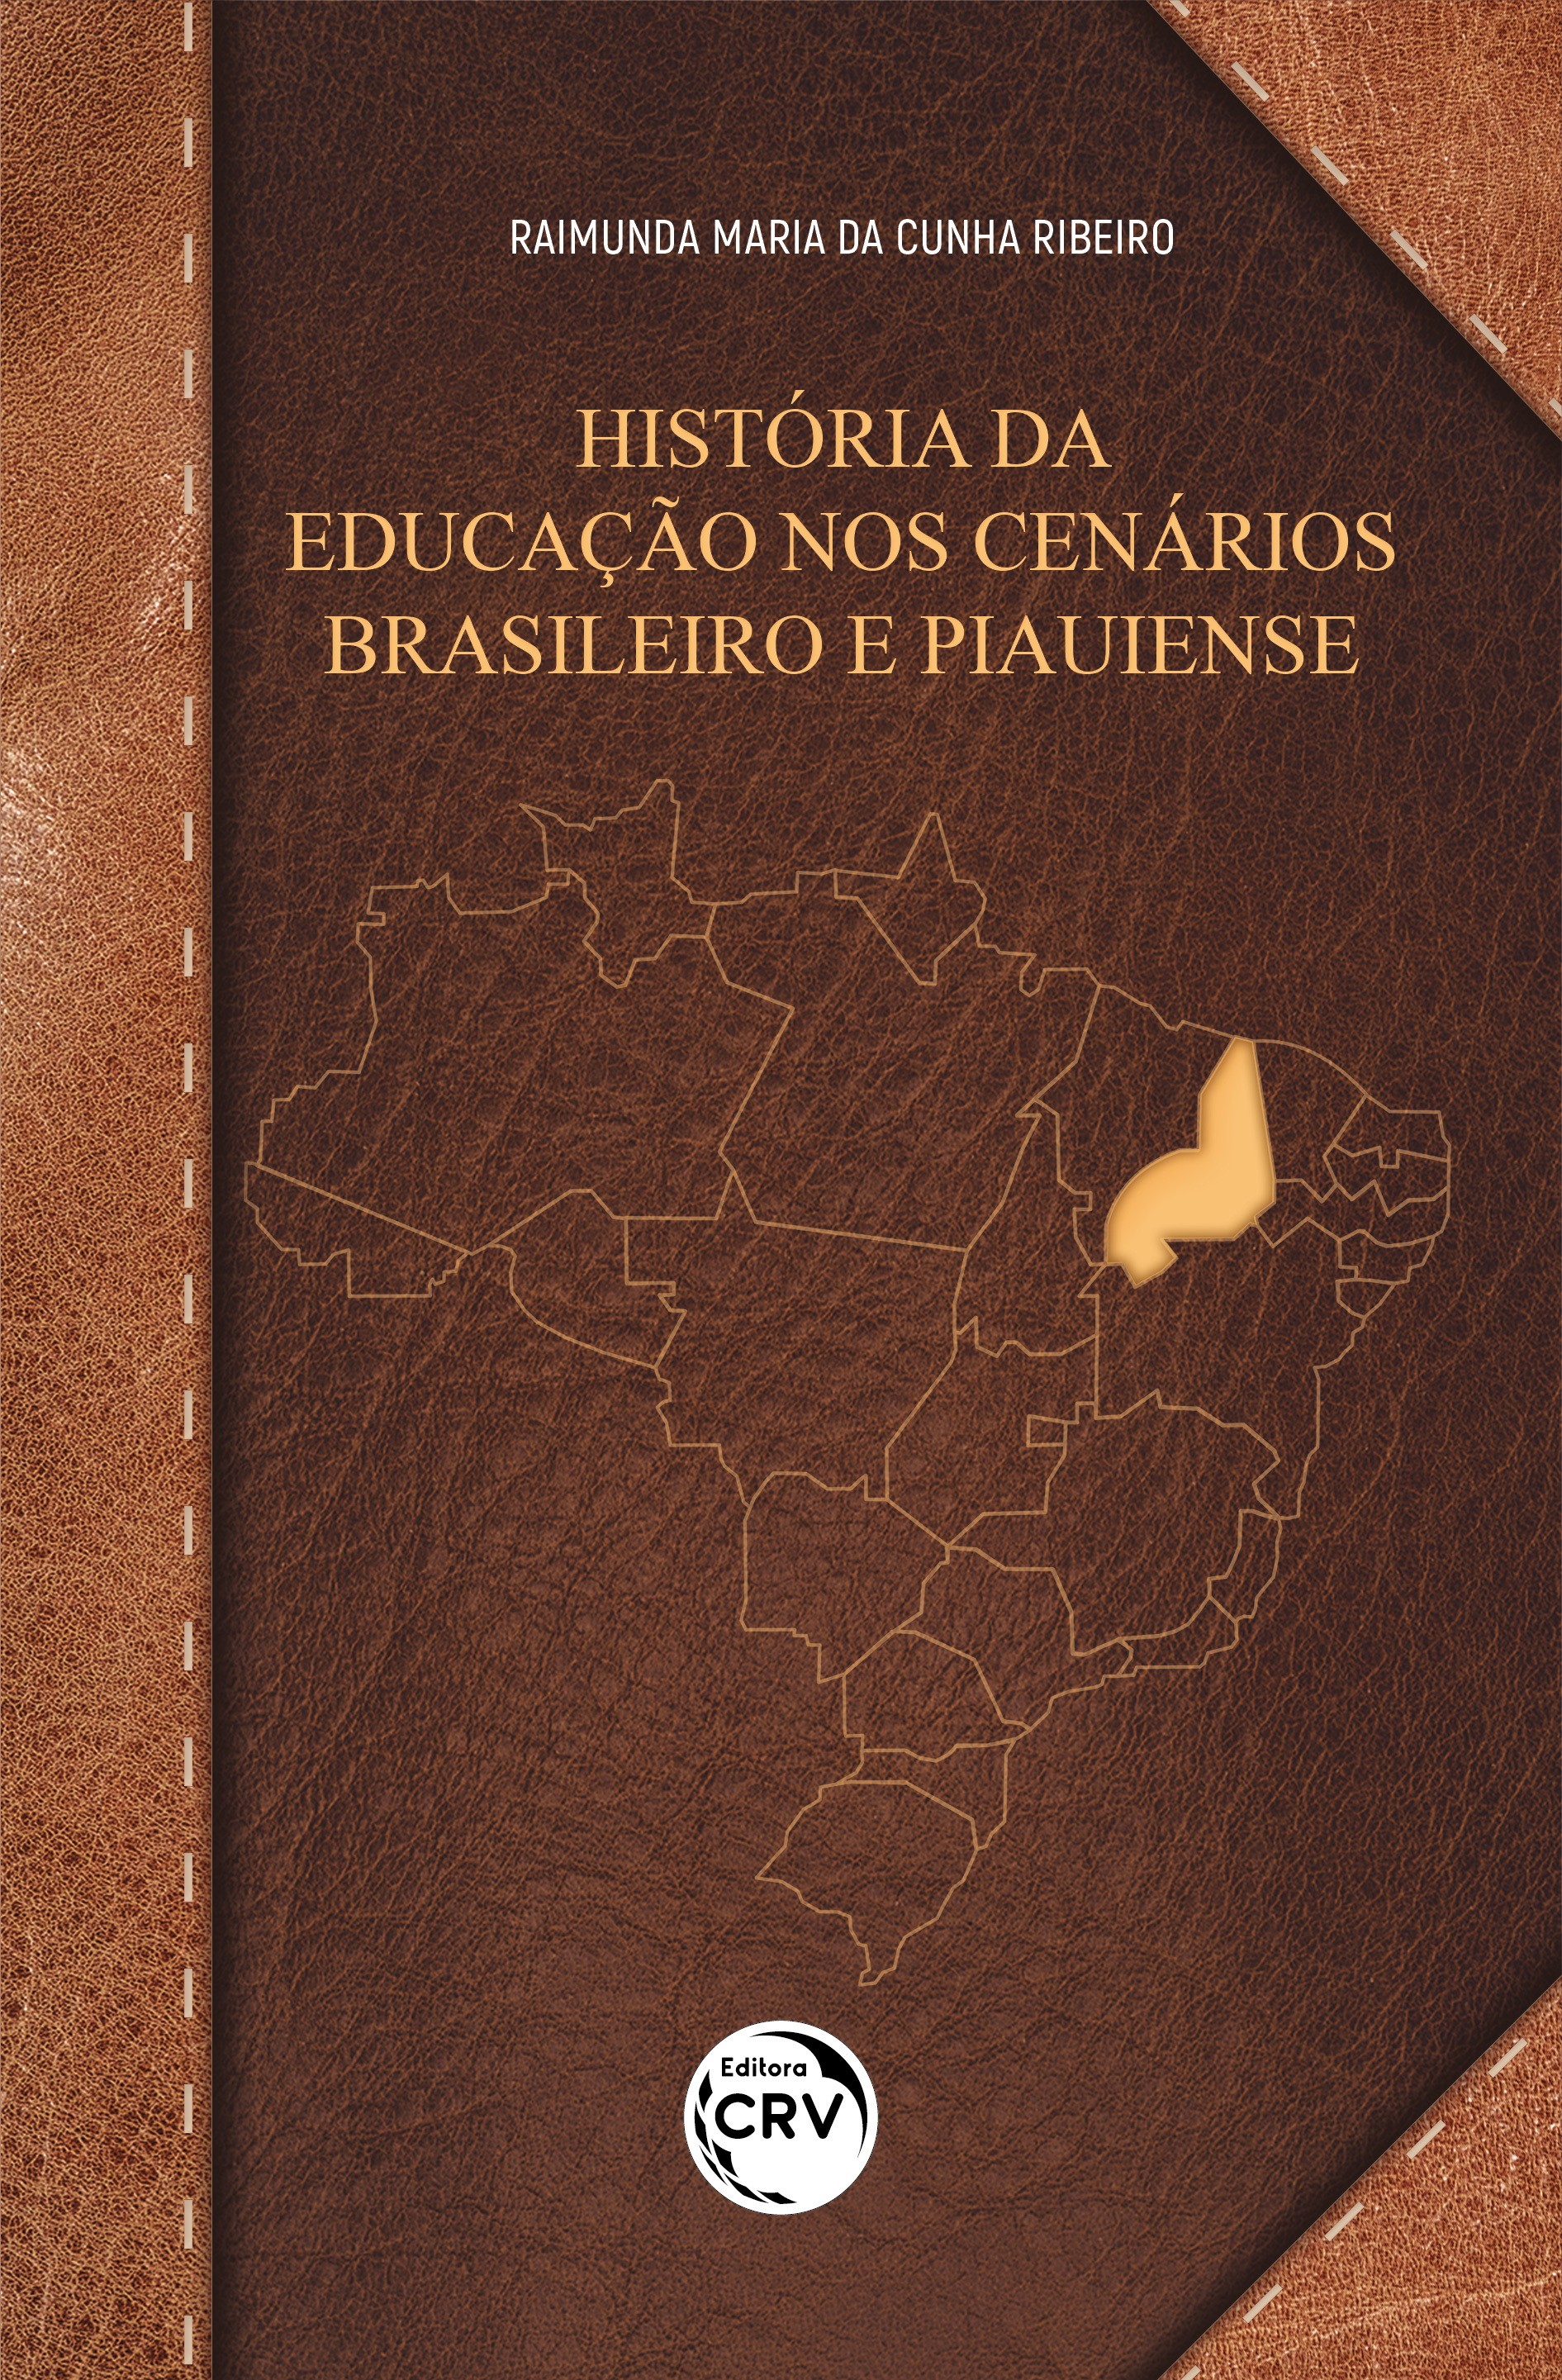 Capa do livro: HISTÓRIA DA EDUCAÇÃO NOS CENÁRIOS BRASILEIRO E PIAUIENSE